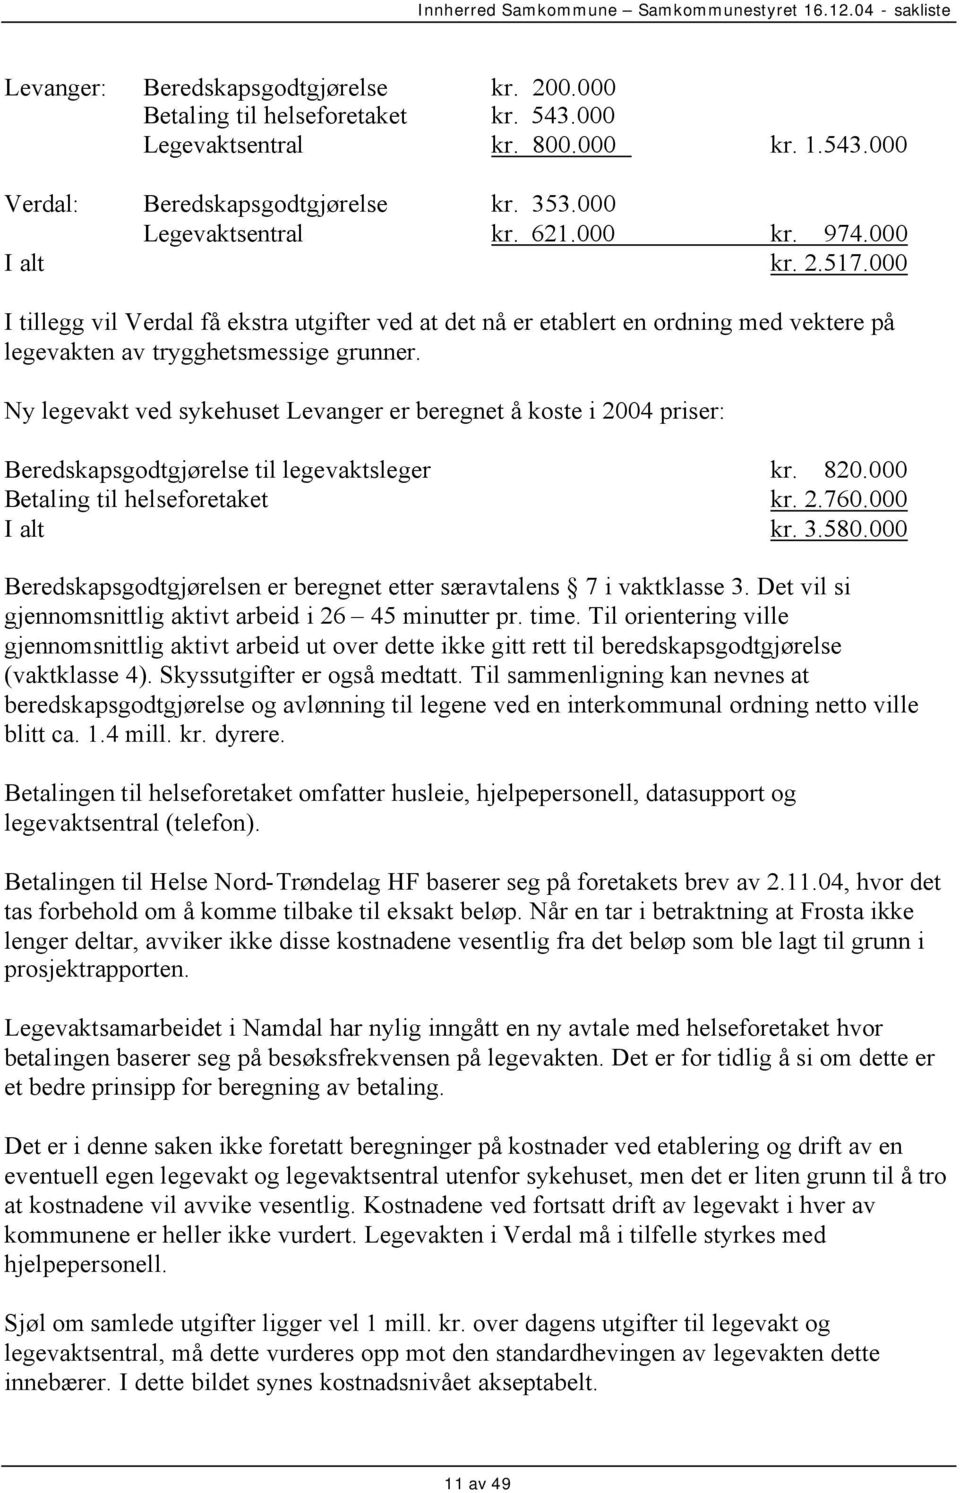 Ny legevakt ved sykehuset Levanger er beregnet å koste i 2004 priser: Beredskapsgodtgjørelse til legevaktsleger kr. 820.000 Betaling til helseforetaket kr. 2.760.000 I alt kr. 3.580.